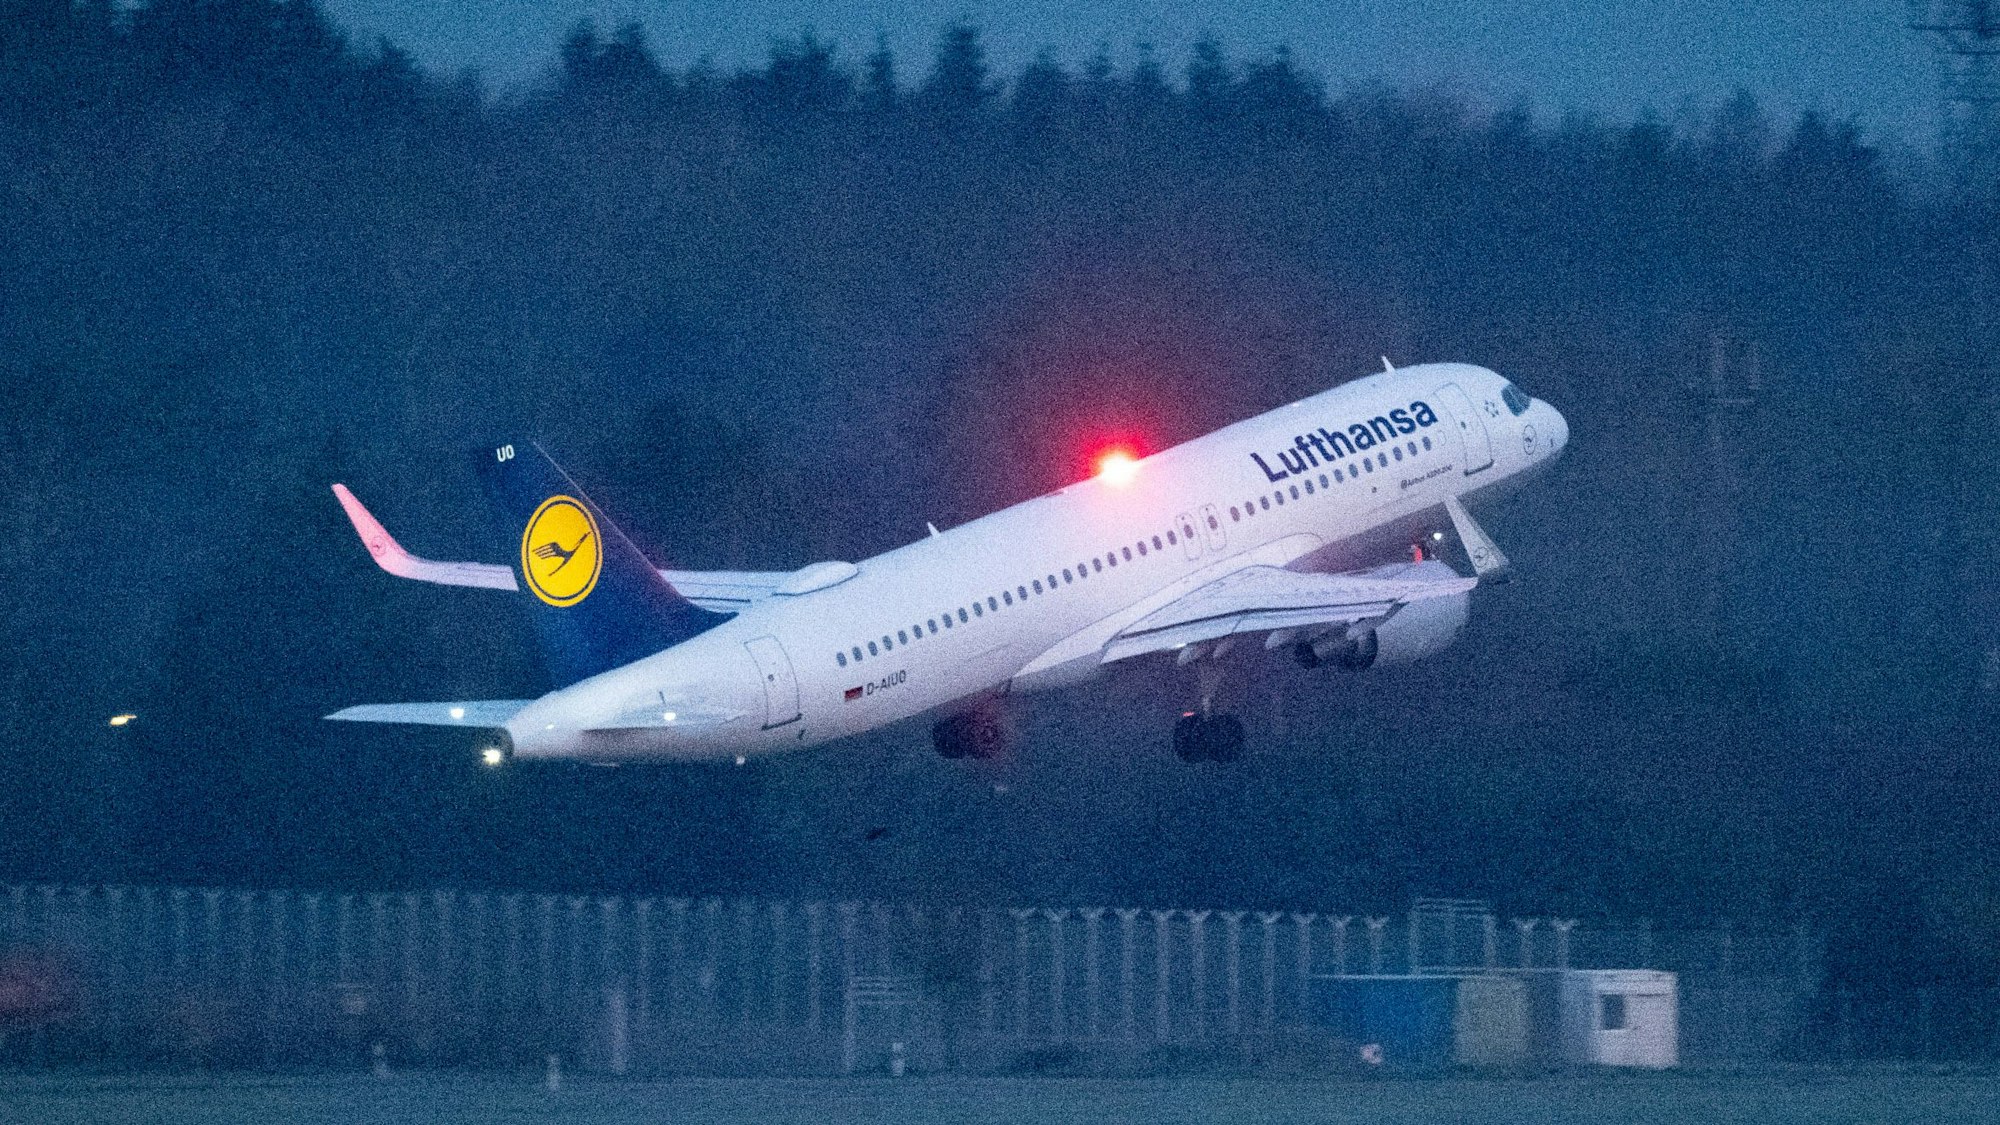 Ein Airbus A320 der deutschen Fluggesellschaft Lufthansa beim Start kurz nach dem Abheben vom Rollfeld. Im Hintergrund leuchtet eine rote Warnlampe. (Symbolbild)